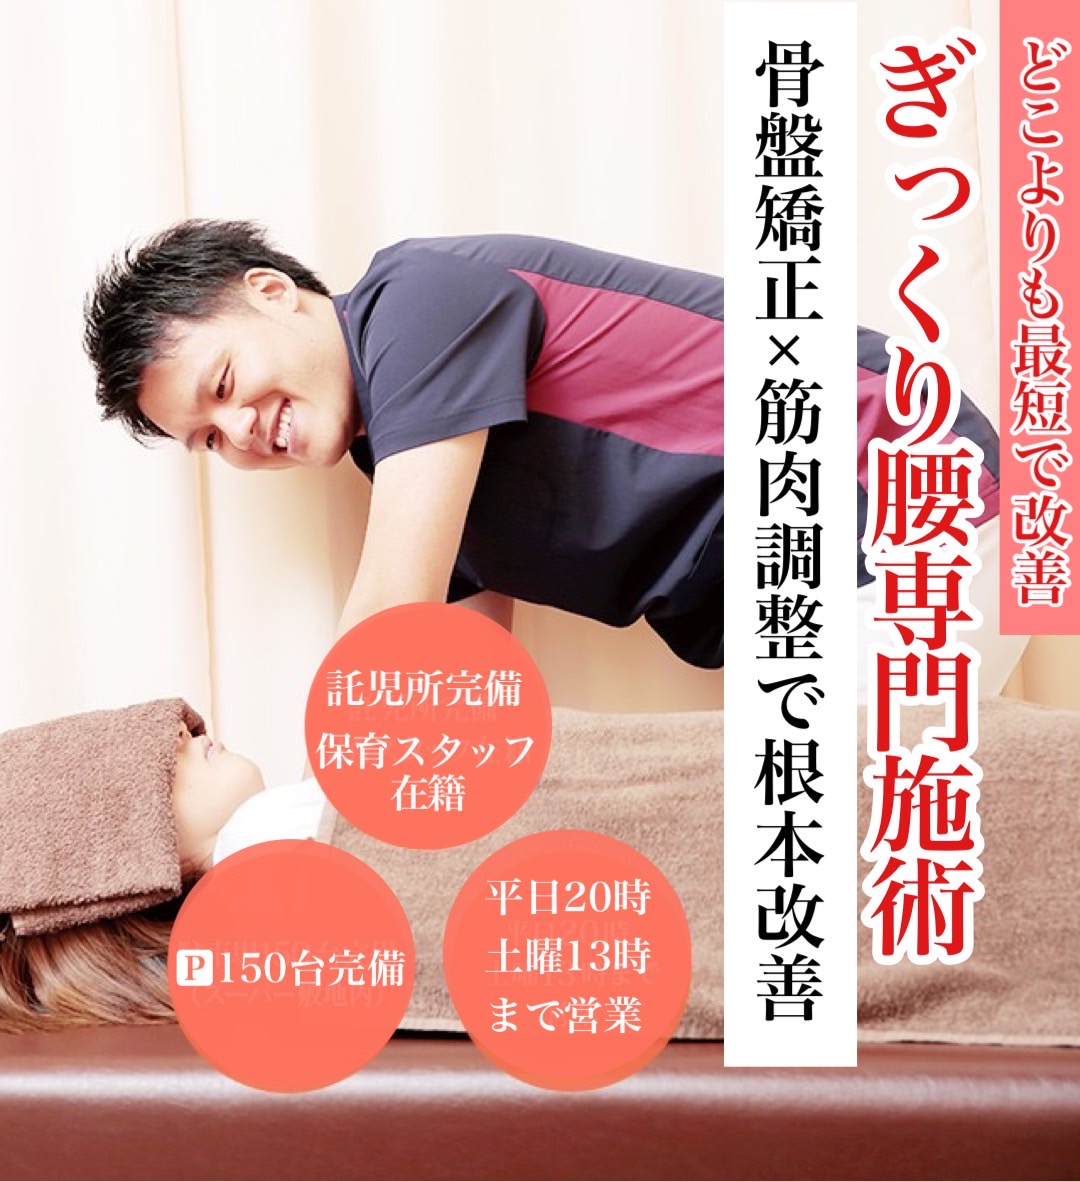 なぜ？新飯塚中央整骨院では、ぎっくり腰が改善するのか？